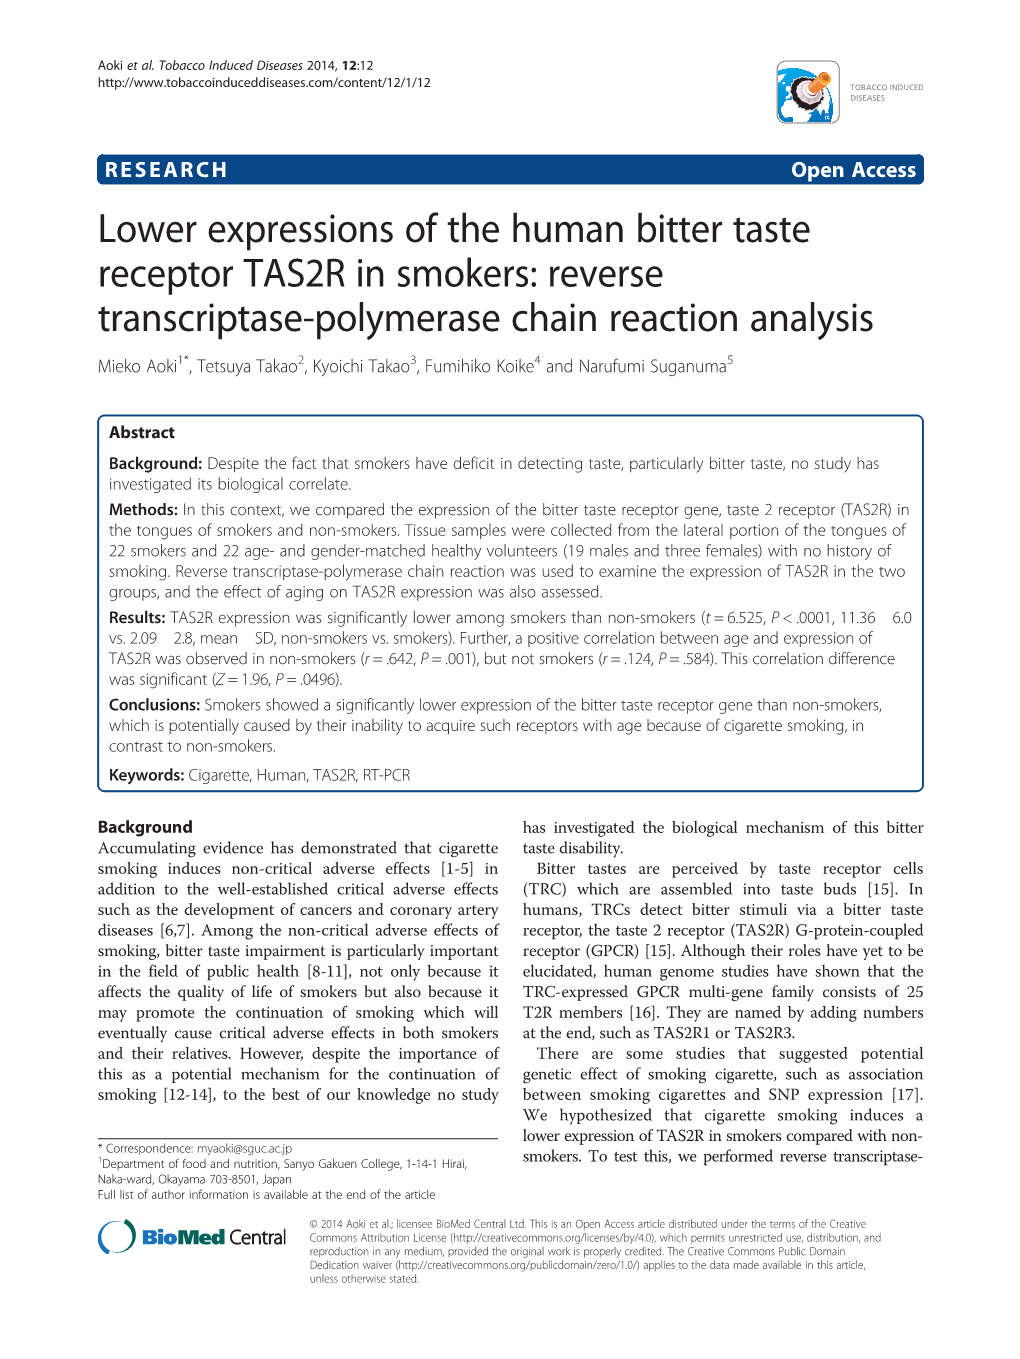 Reverse Transcriptase-Polymerase Chain Reaction Analysis Mieko Aoki1*, Tetsuya Takao2, Kyoichi Takao3, Fumihiko Koike4 and Narufumi Suganuma5